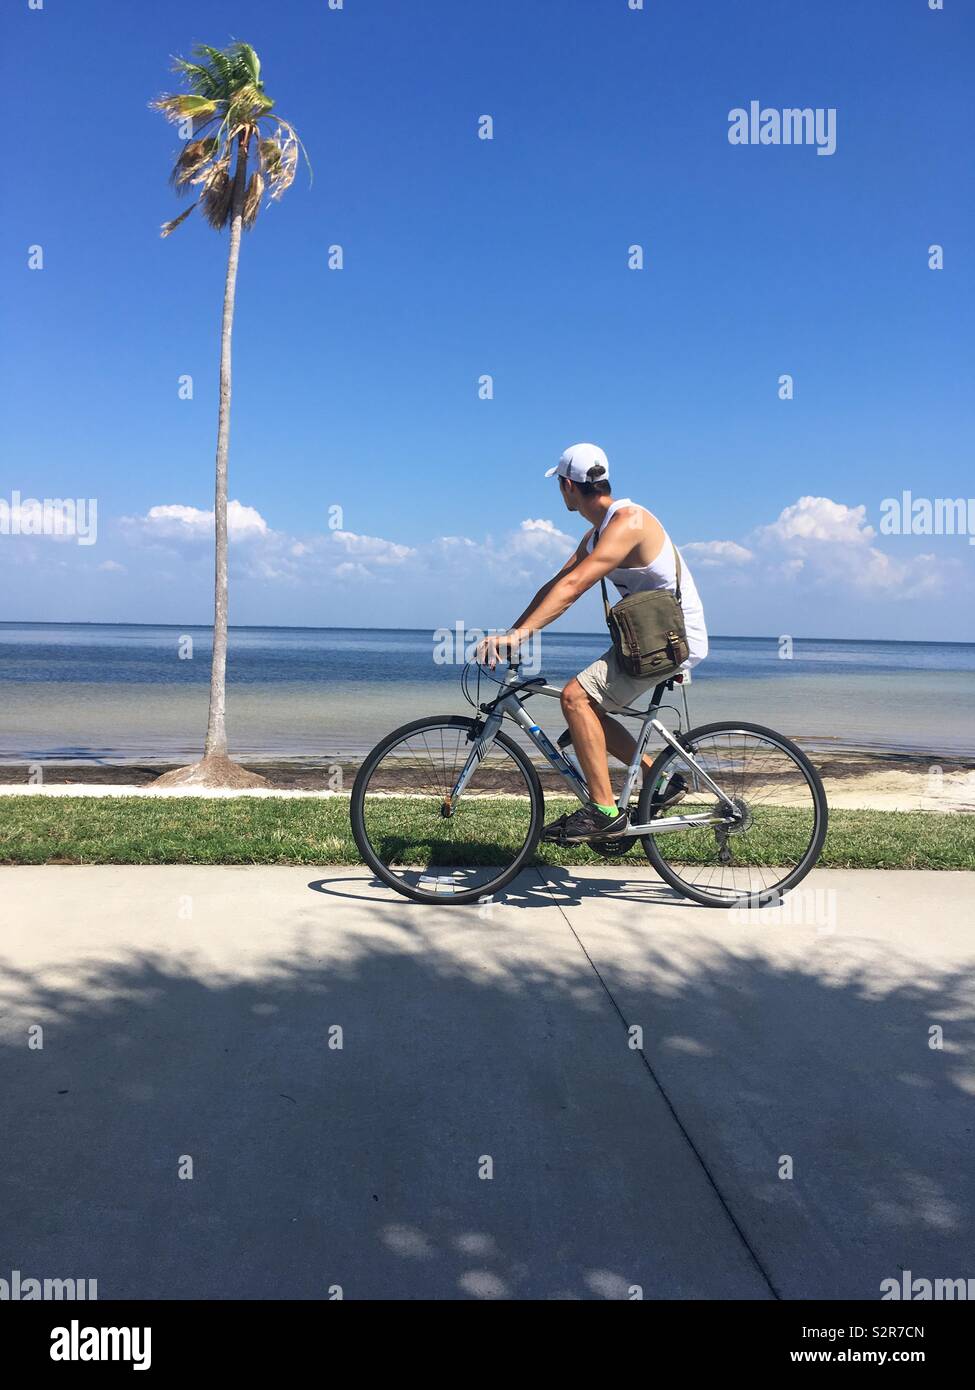 L'homme sur le vélo Le vélo passé palmier, regardant la mer Banque D'Images